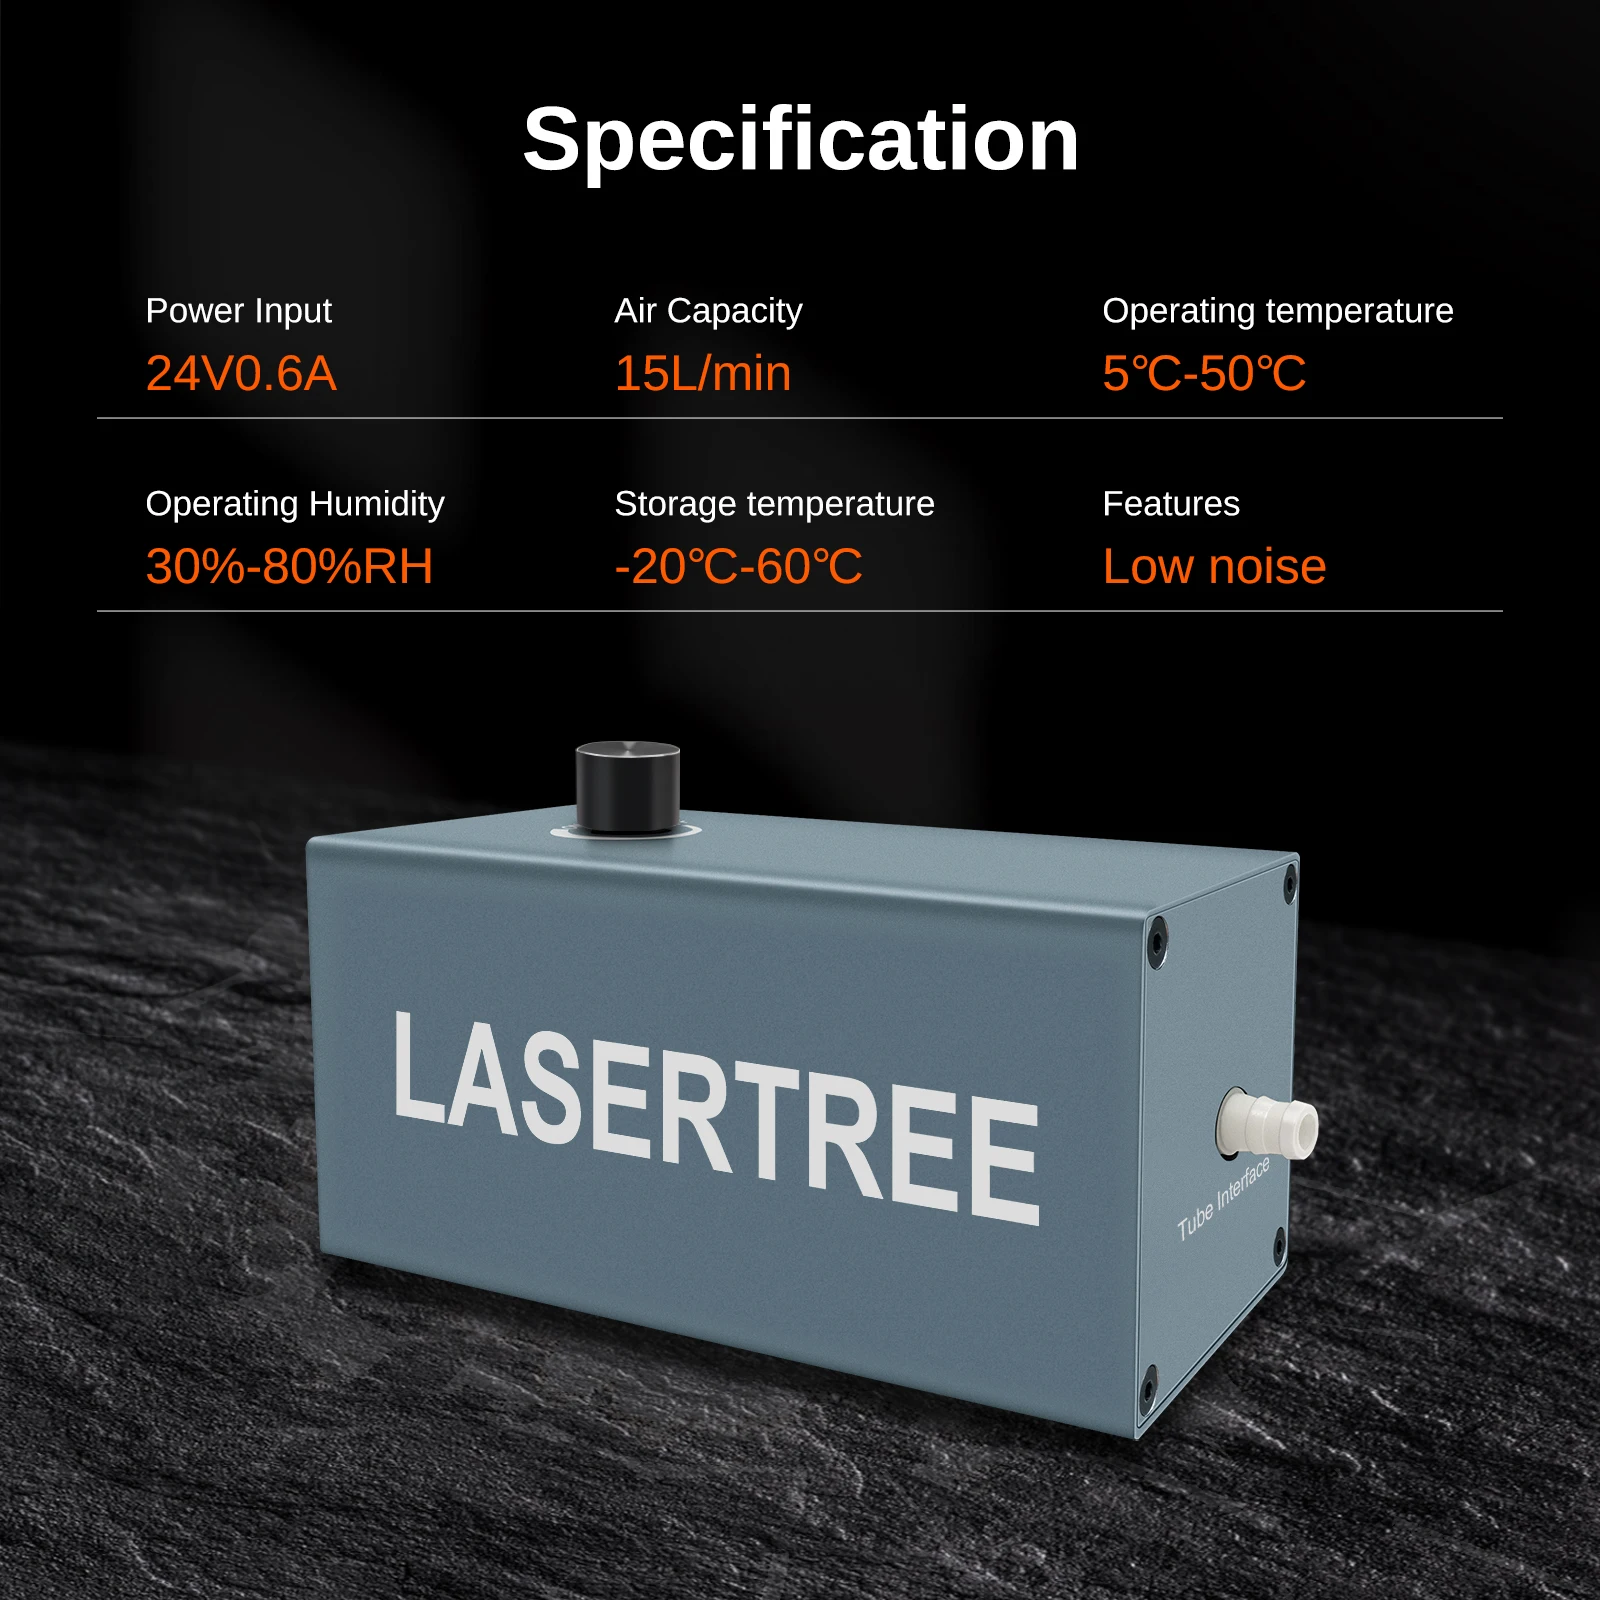 Laserowe drzewo 15L/min pompa powietrza niskoszowa laserowa sprężarka wspomagająca powietrze do lasera maszyna do grawerowania modułu laserowego narzędzia do drewna